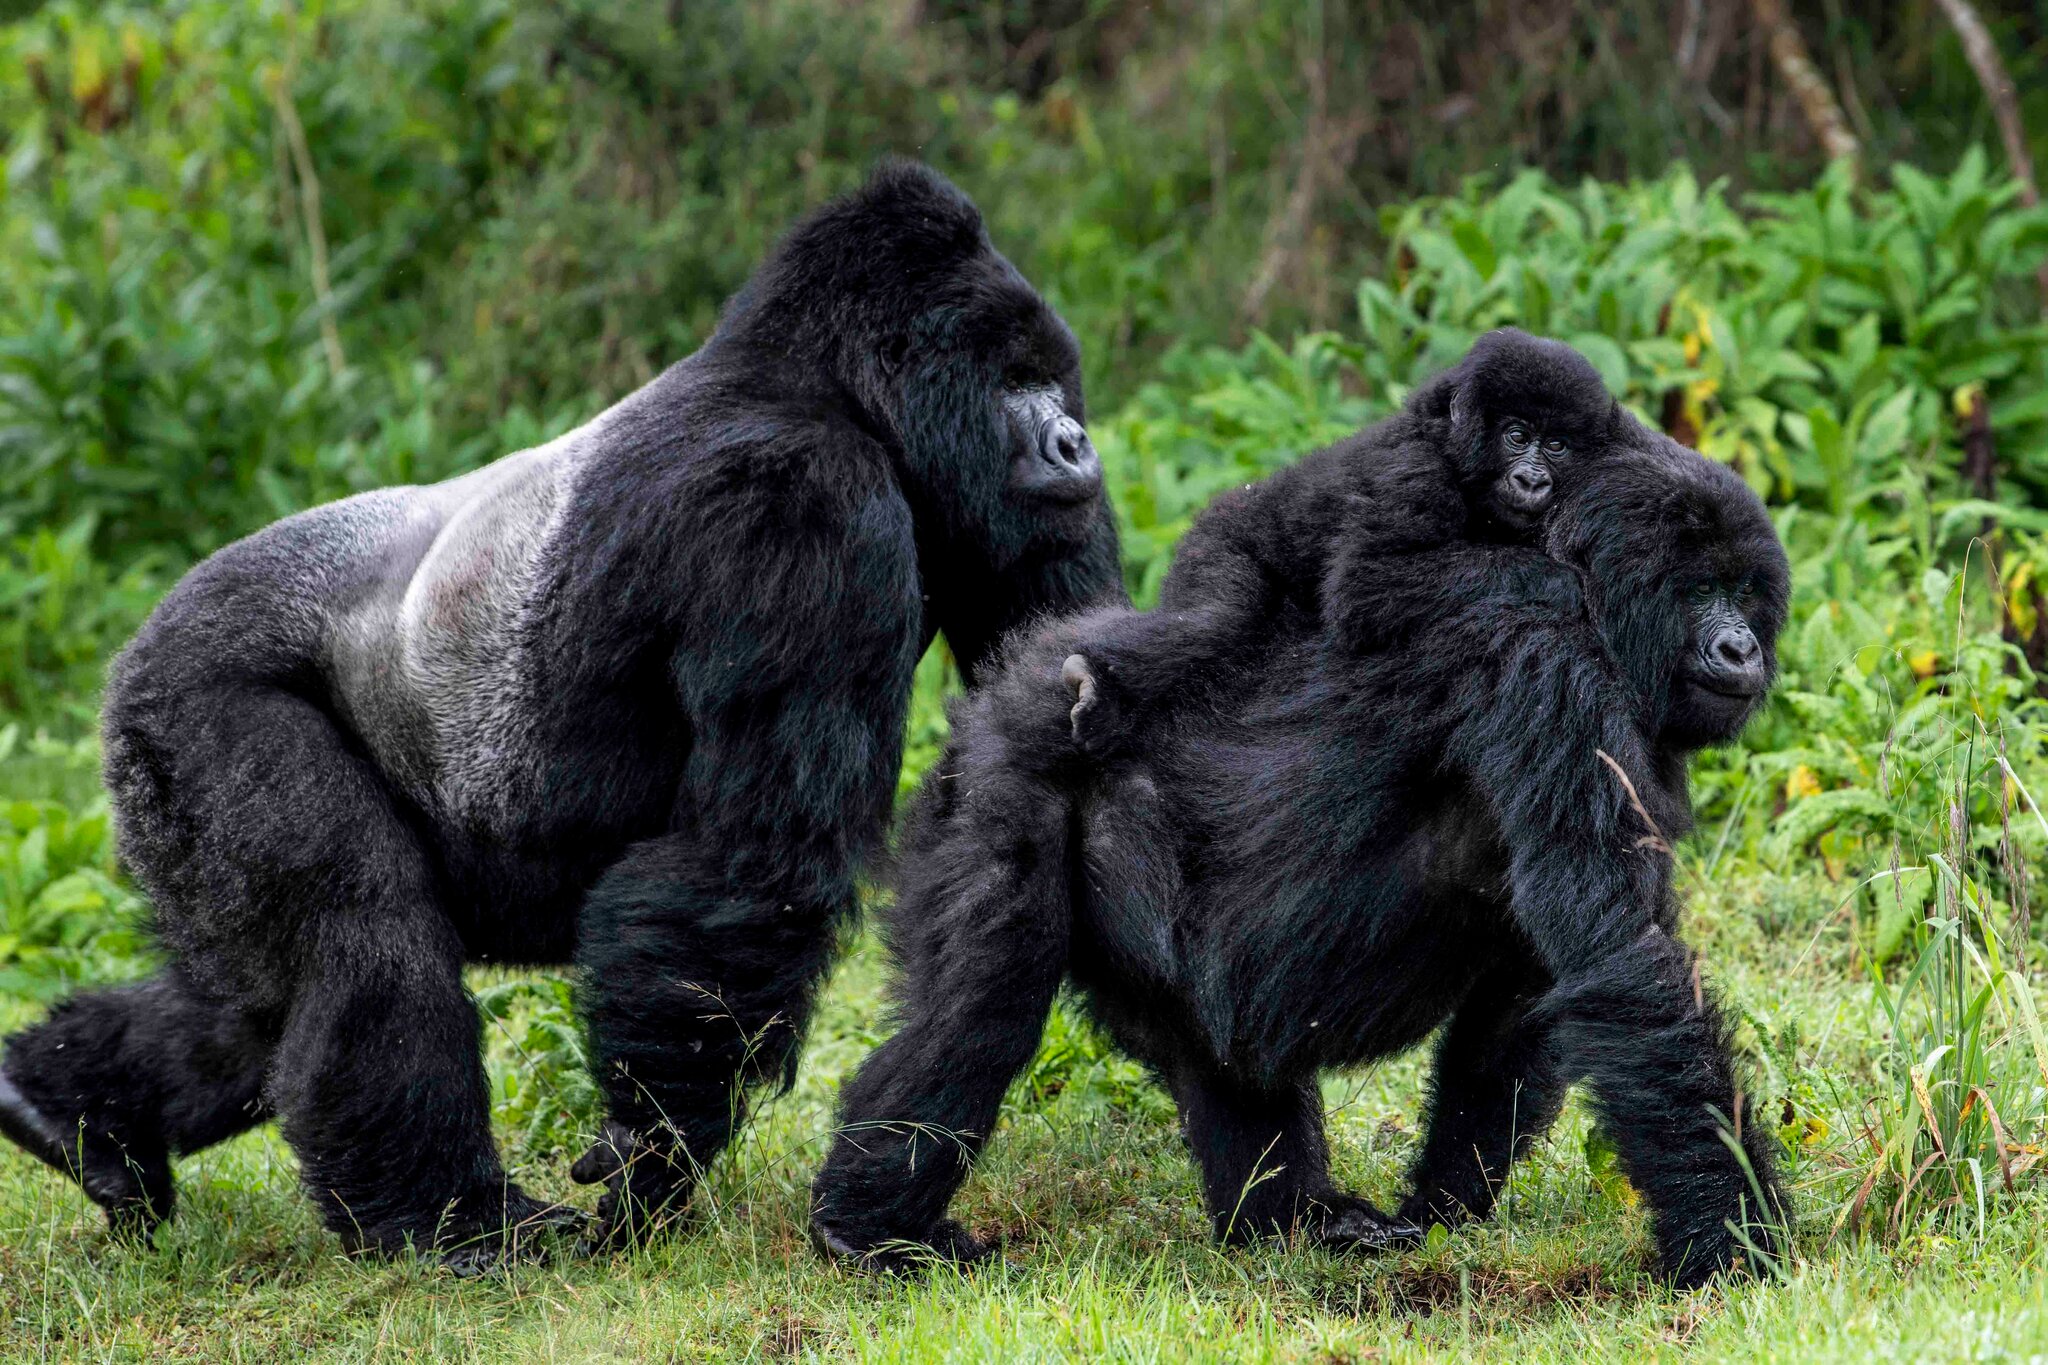 A family of Gorillas